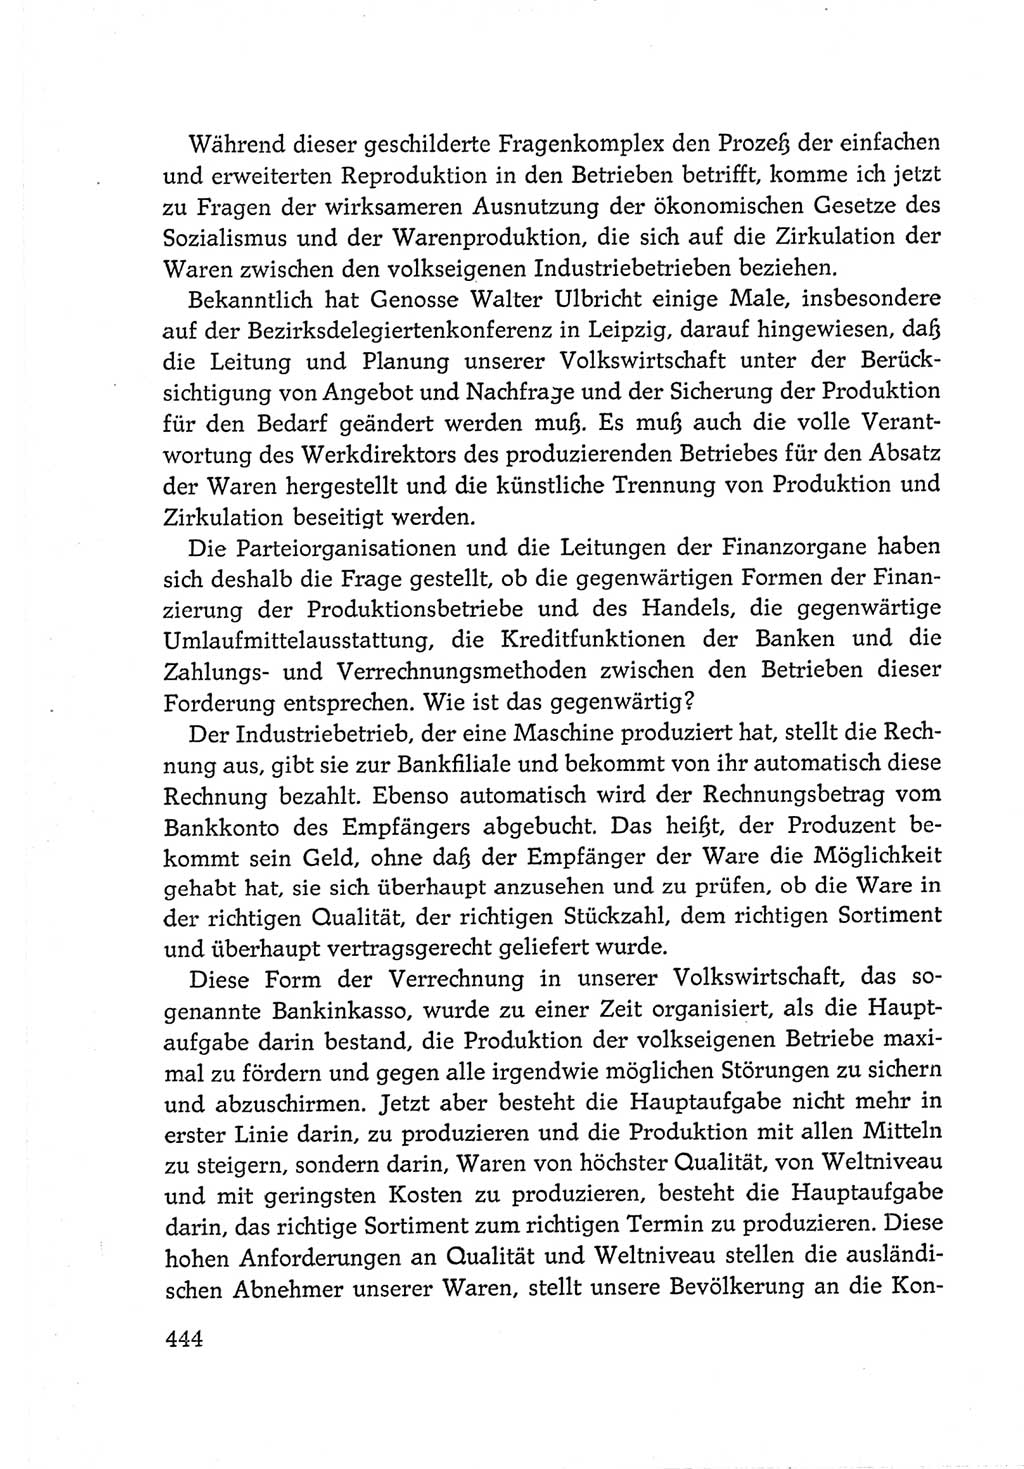 Protokoll der Verhandlungen des Ⅵ. Parteitages der Sozialistischen Einheitspartei Deutschlands (SED) [Deutsche Demokratische Republik (DDR)] 1963, Band Ⅲ, Seite 444 (Prot. Verh. Ⅵ. PT SED DDR 1963, Bd. Ⅲ, S. 444)